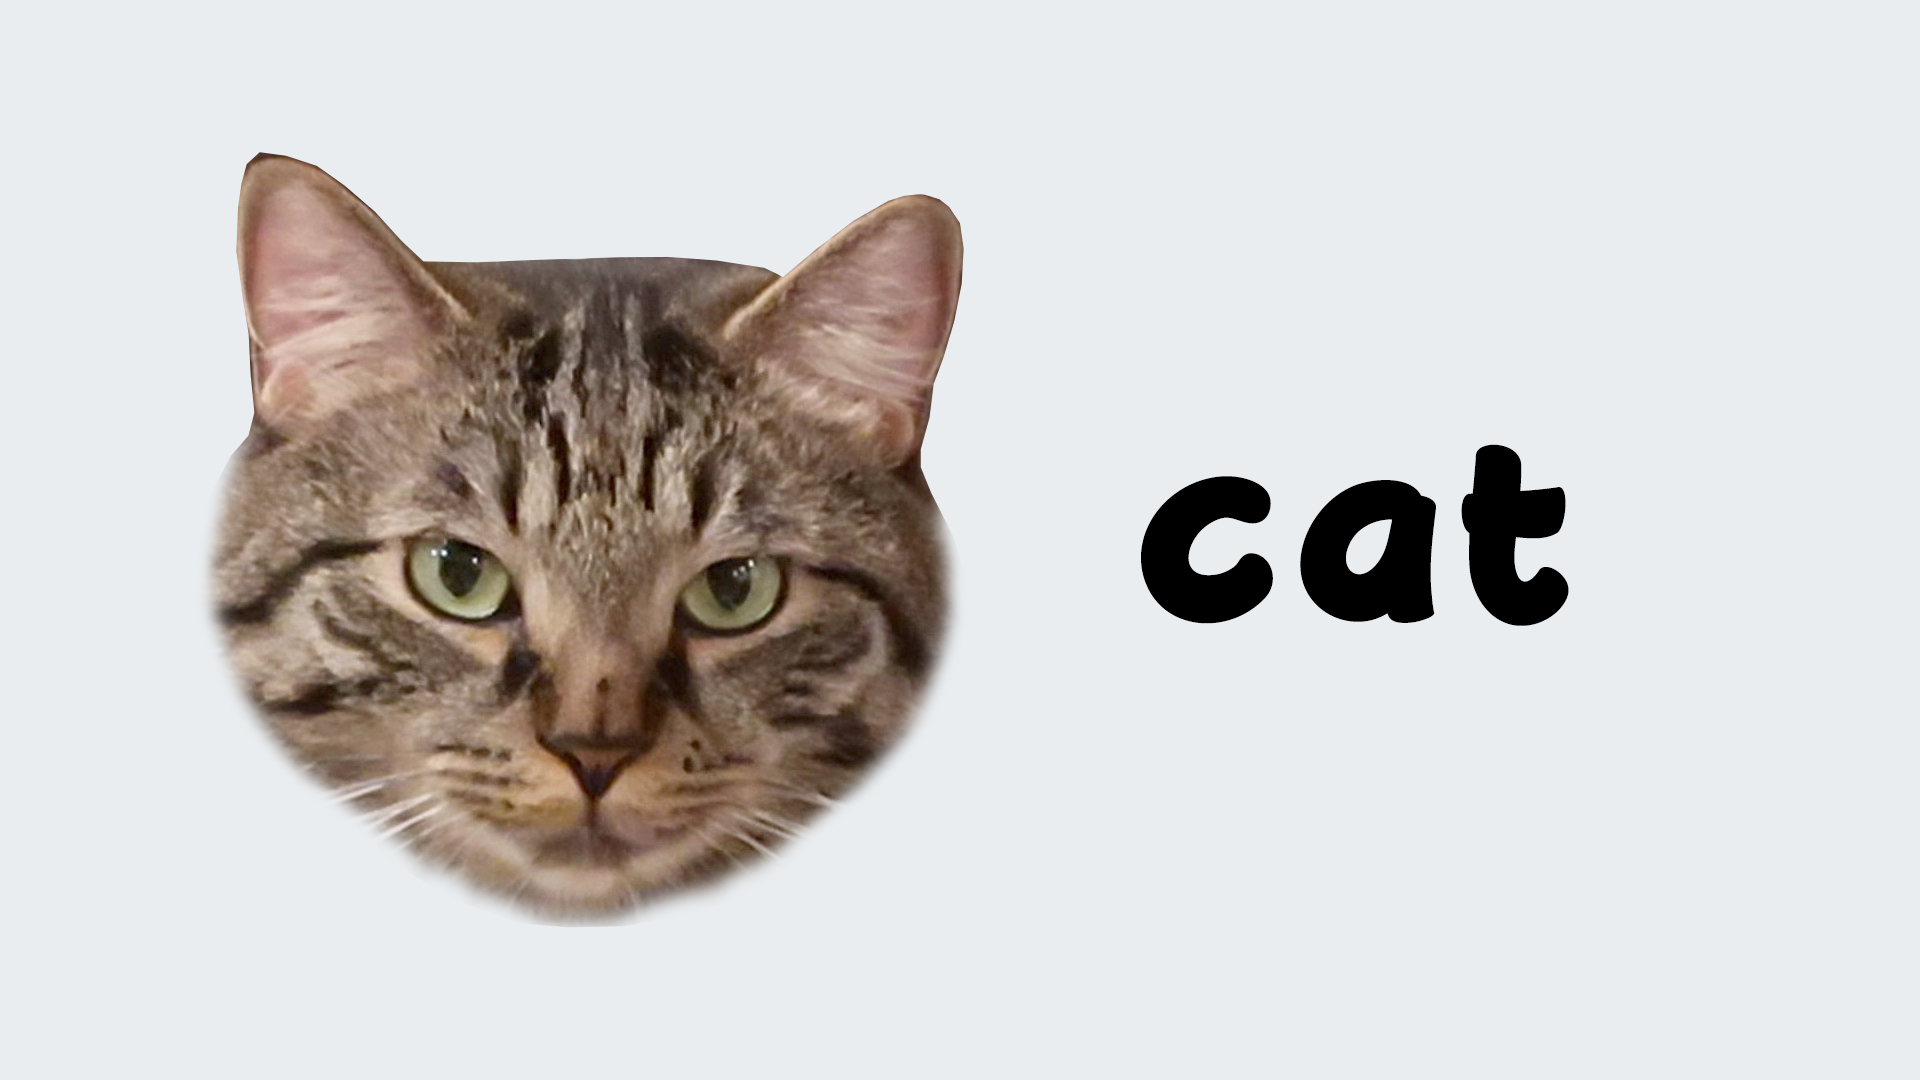 Your_Cat. Cat teacher. H4to Cat. Belling the Cat перевод. This your cat